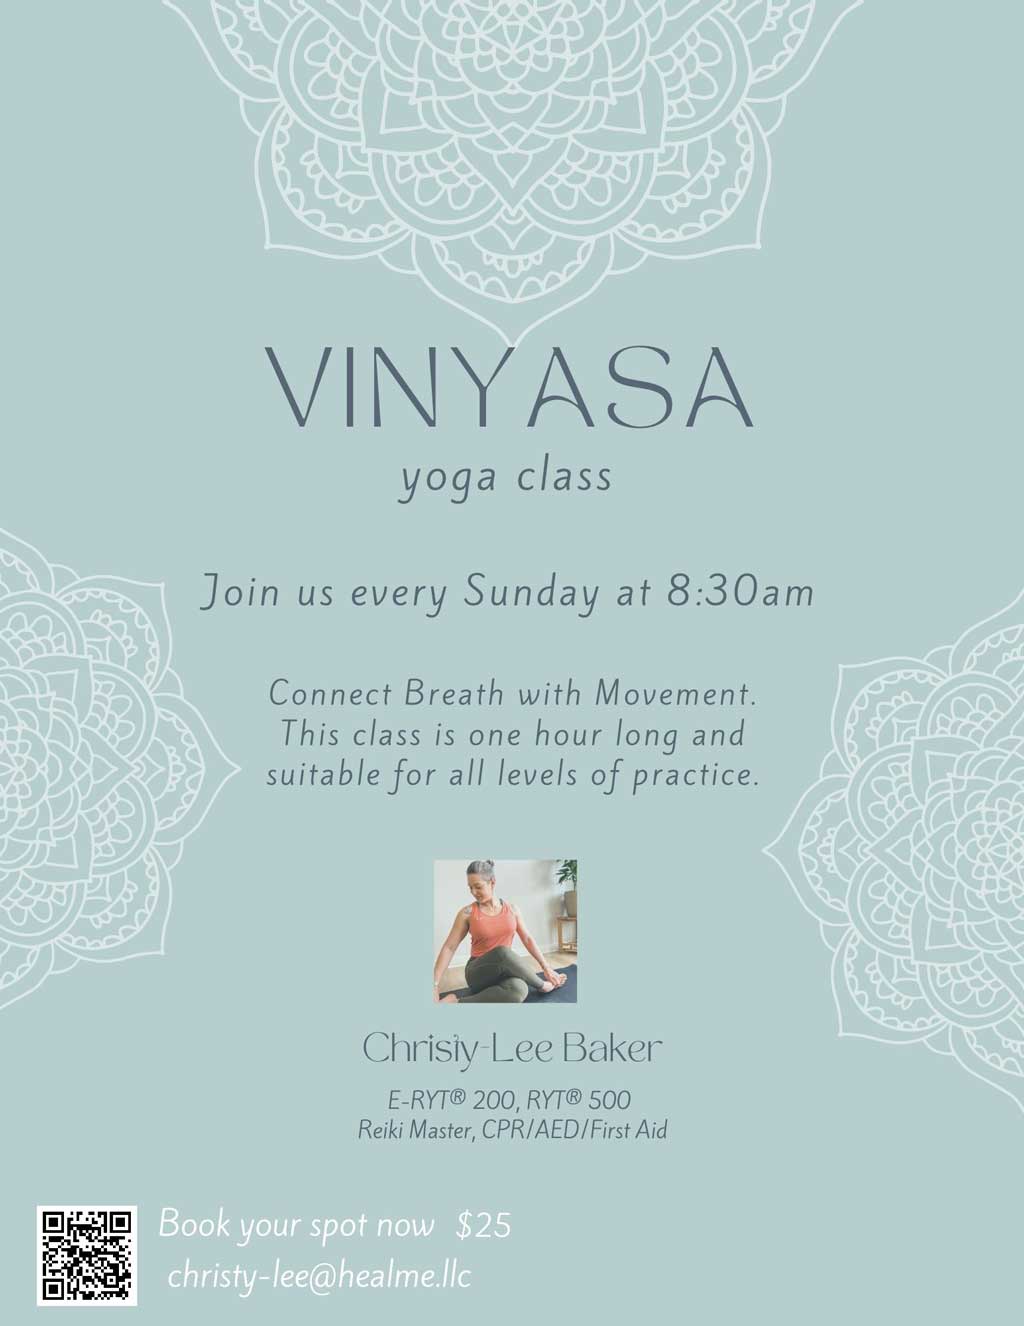 Sunday Morning Vinyasa Yoga with Christy-Lee